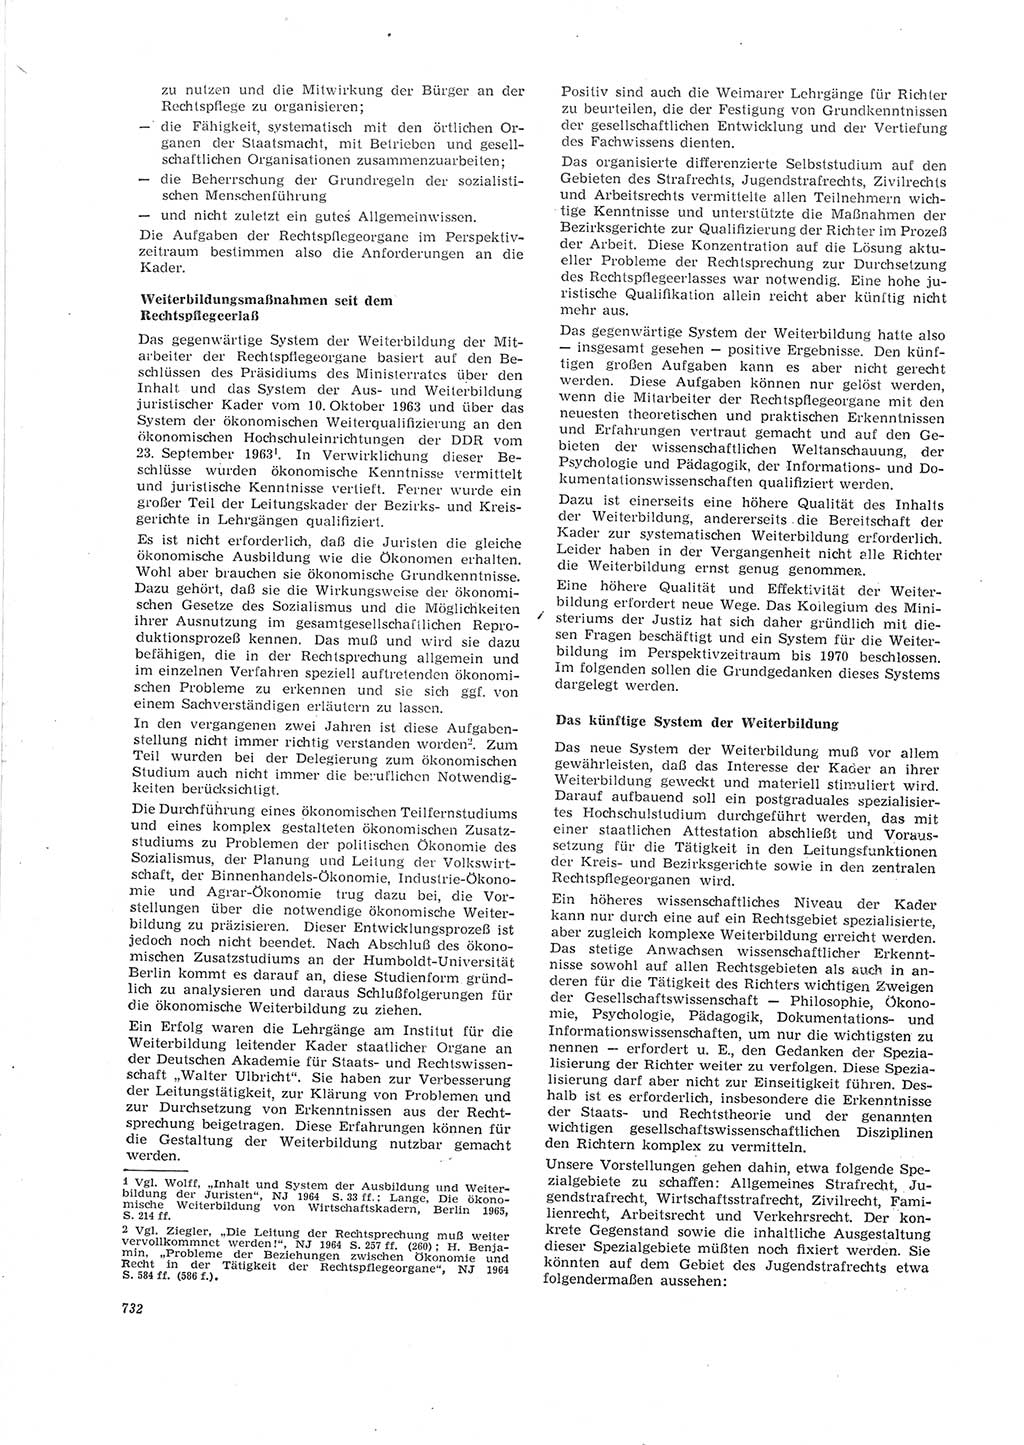 Neue Justiz (NJ), Zeitschrift für Recht und Rechtswissenschaft [Deutsche Demokratische Republik (DDR)], 19. Jahrgang 1965, Seite 732 (NJ DDR 1965, S. 732)